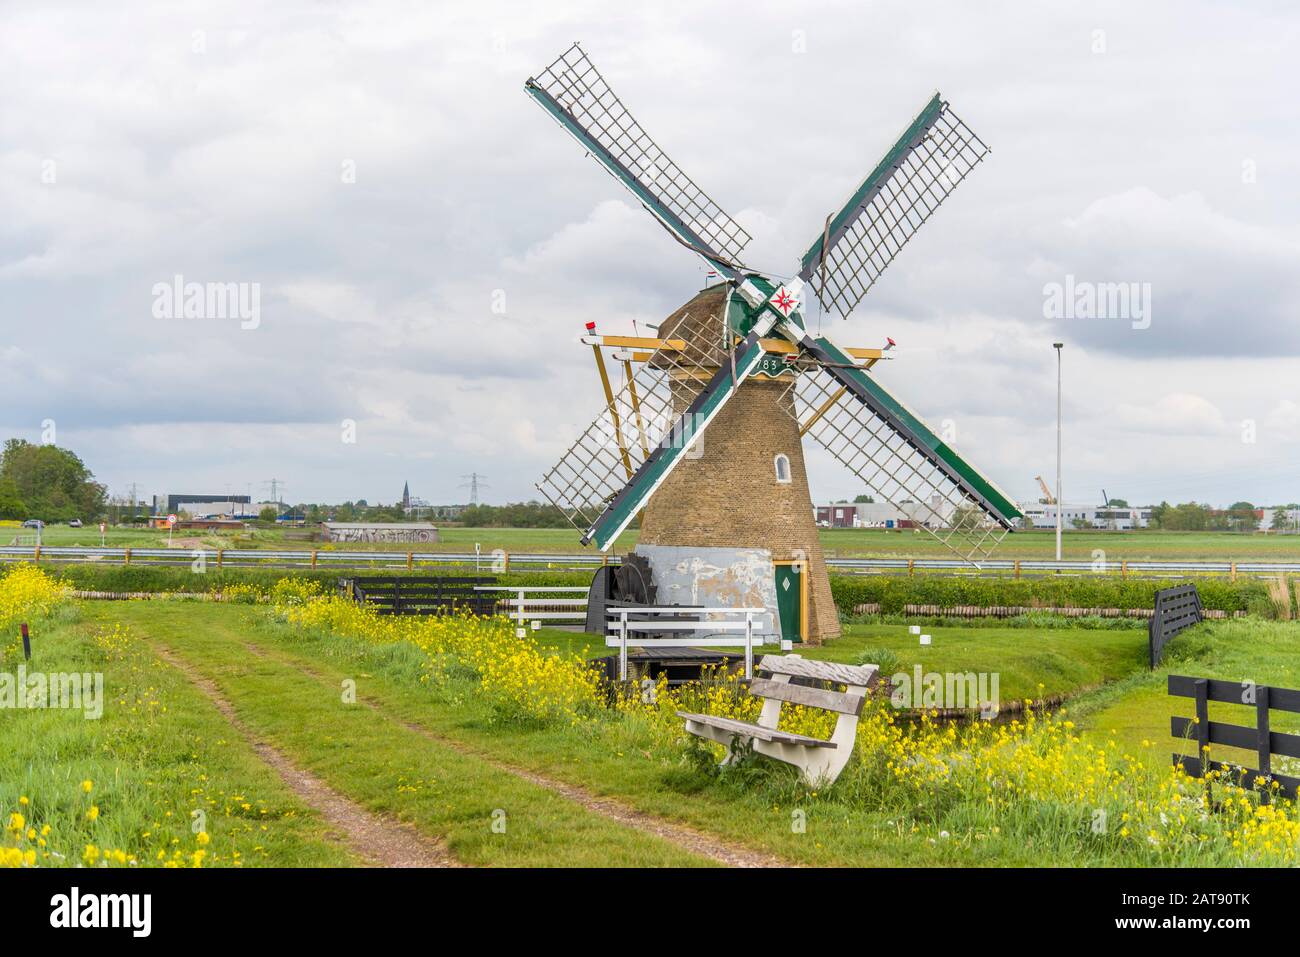 legaal Lyrisch Doodskaak Friesland Nederland mill molen netherlands wanswerd. Windmolen Schermerhorn  Nederland Stock Photo - Alamy